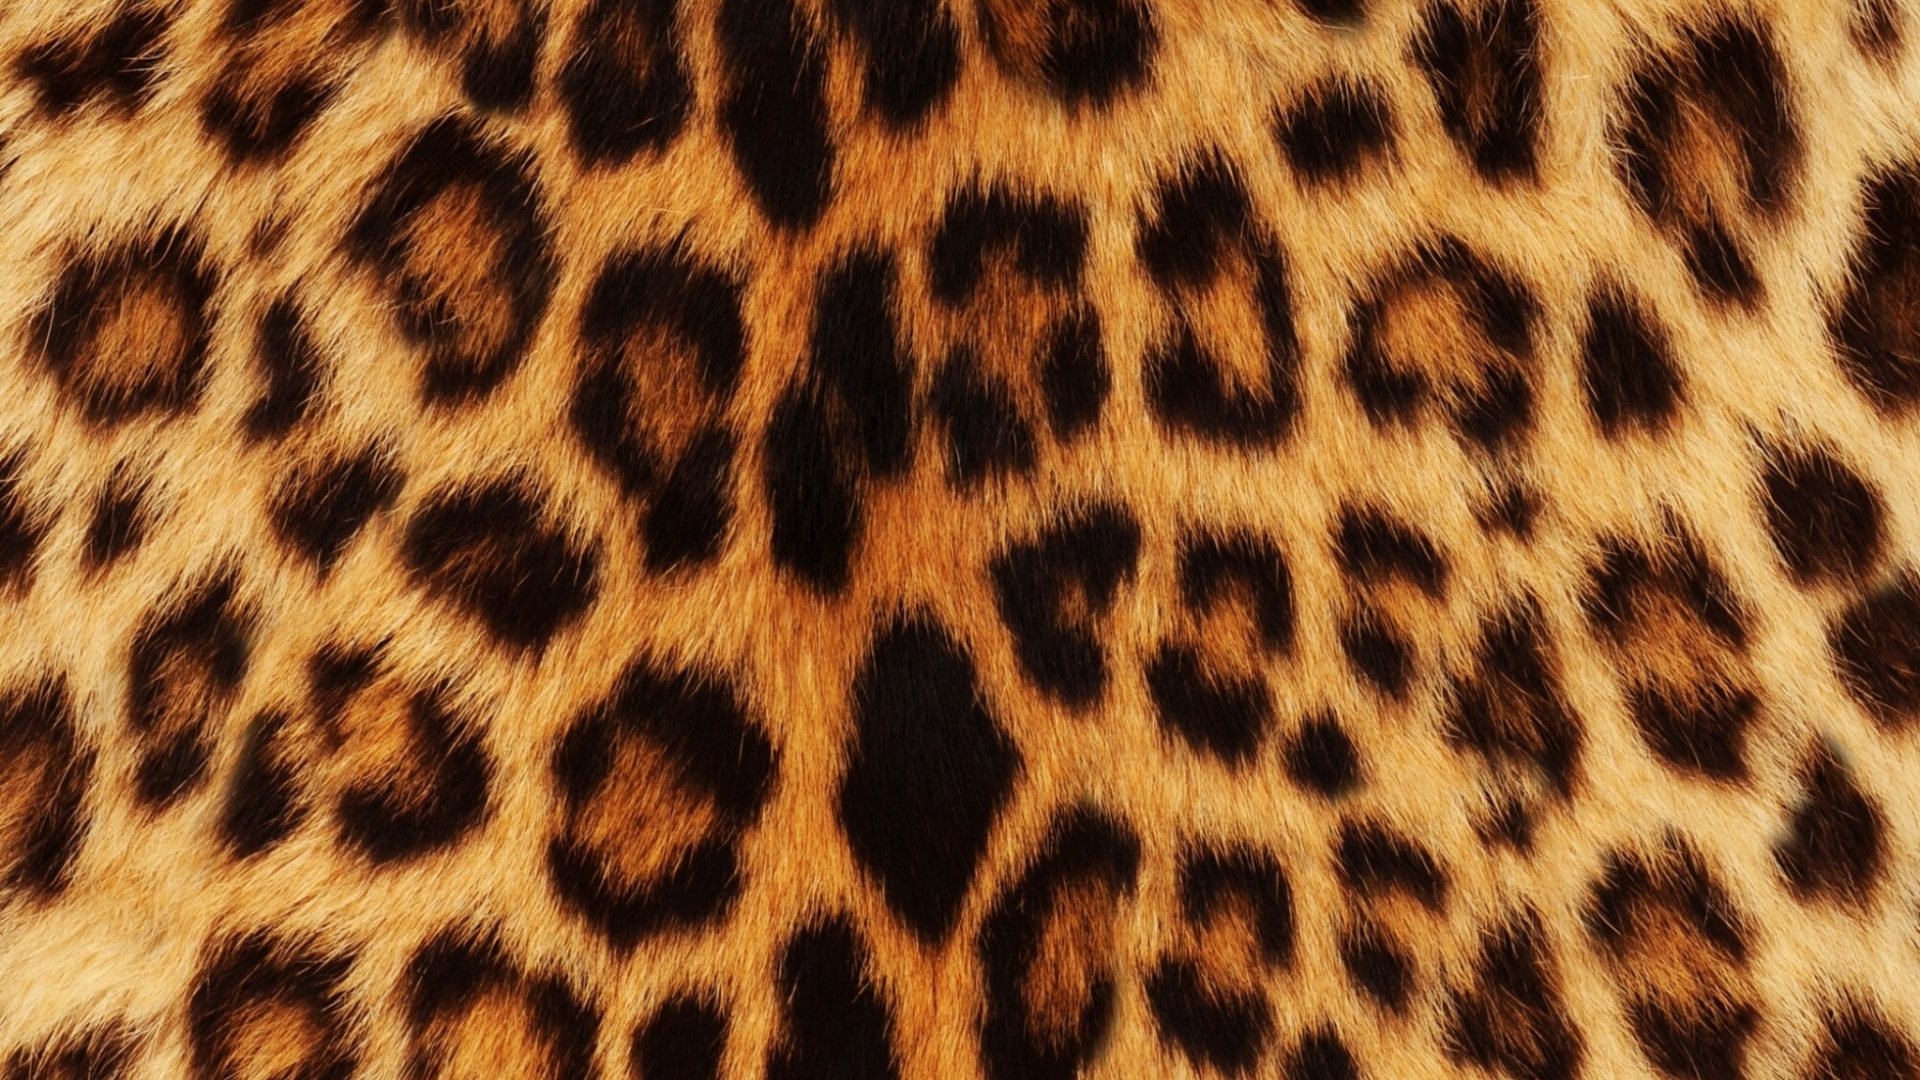 Леопард фон